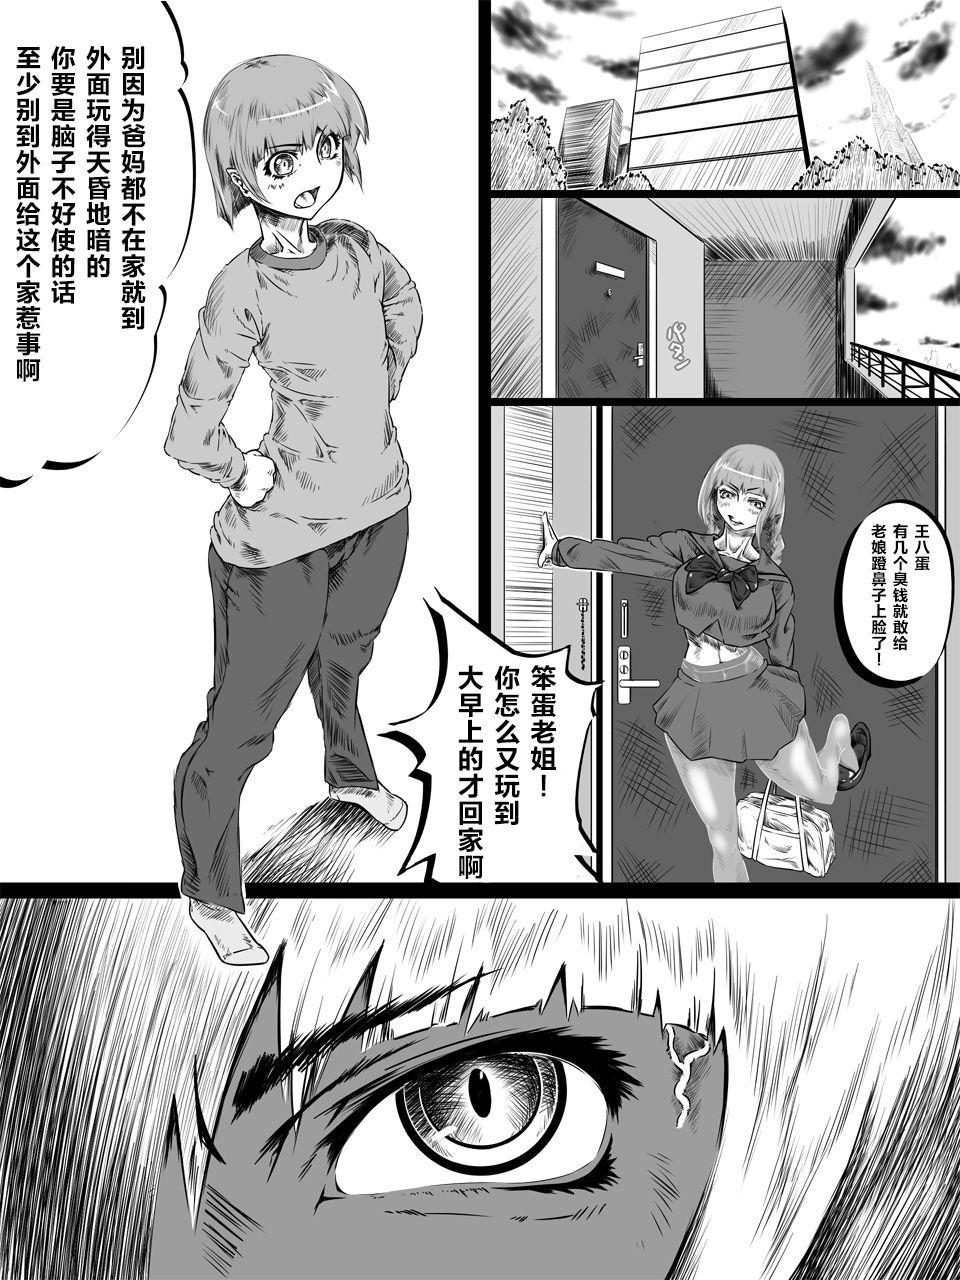 Flash Uri Shitei - Original Ruiva - Page 4